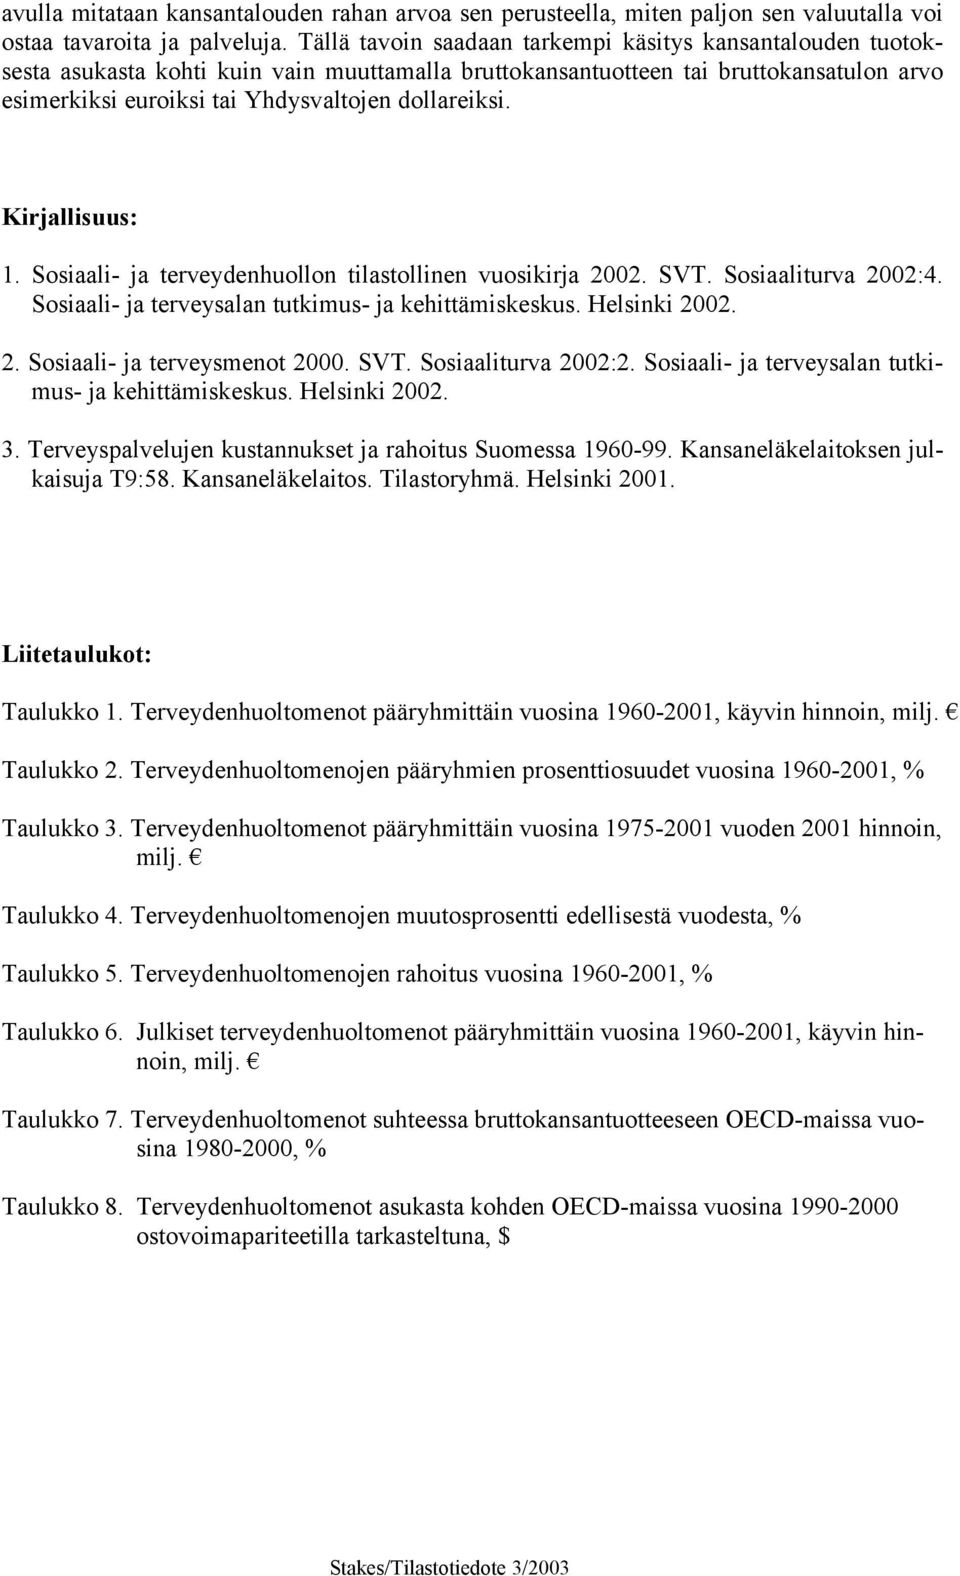 Kirjallisuus: 1. Sosiaali- ja terveydenhuollon tilastollinen vuosikirja 2002. SVT. Sosiaaliturva 2002:4. Sosiaali- ja terveysalan tutkimus- ja kehittämiskeskus. Helsinki 2002. 2. Sosiaali- ja terveysmenot 2000.